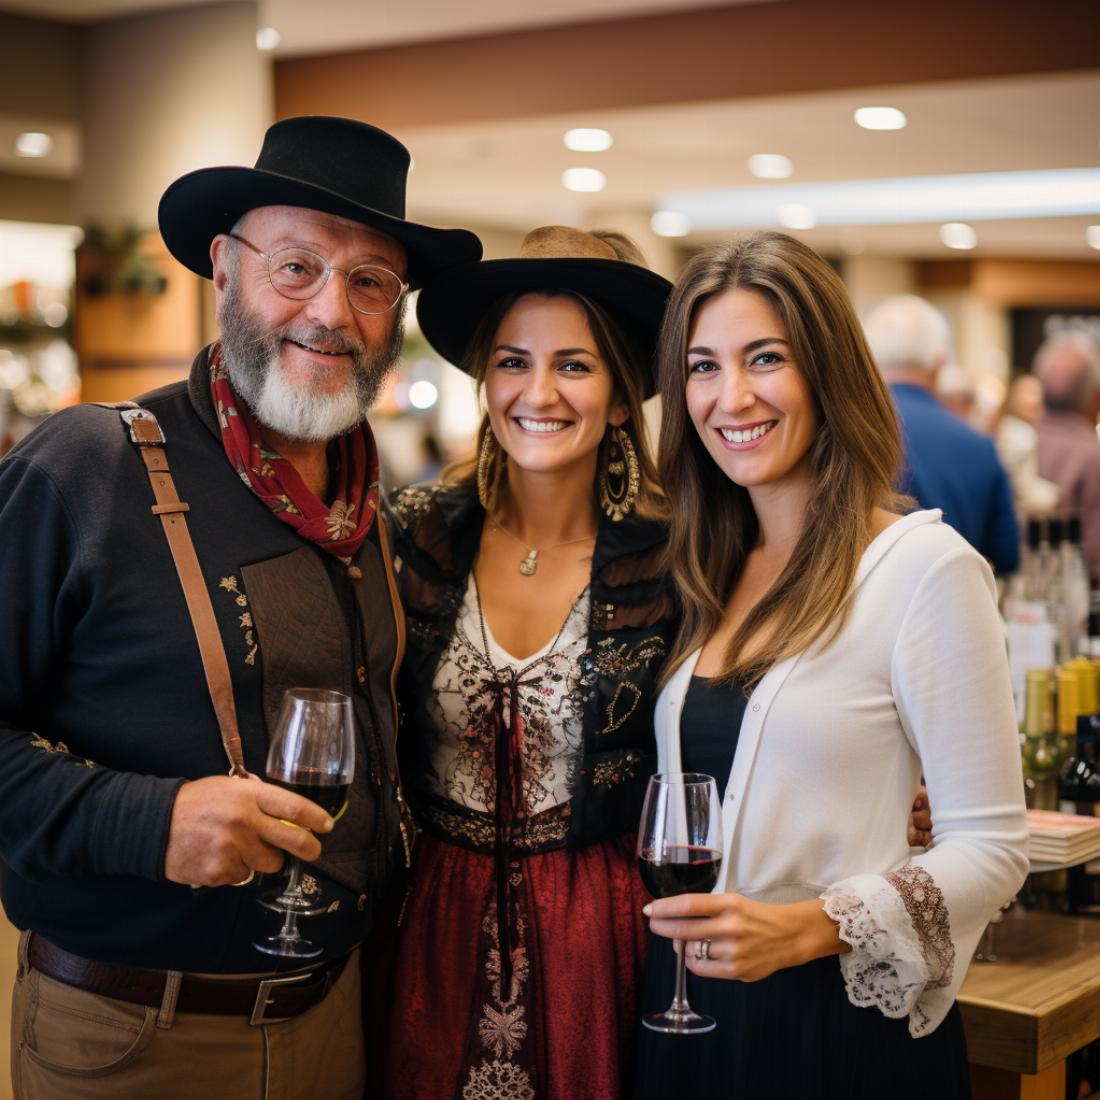 Les événements vinicoles d'Alsace permettent de découvrir les viticulteurs locaux